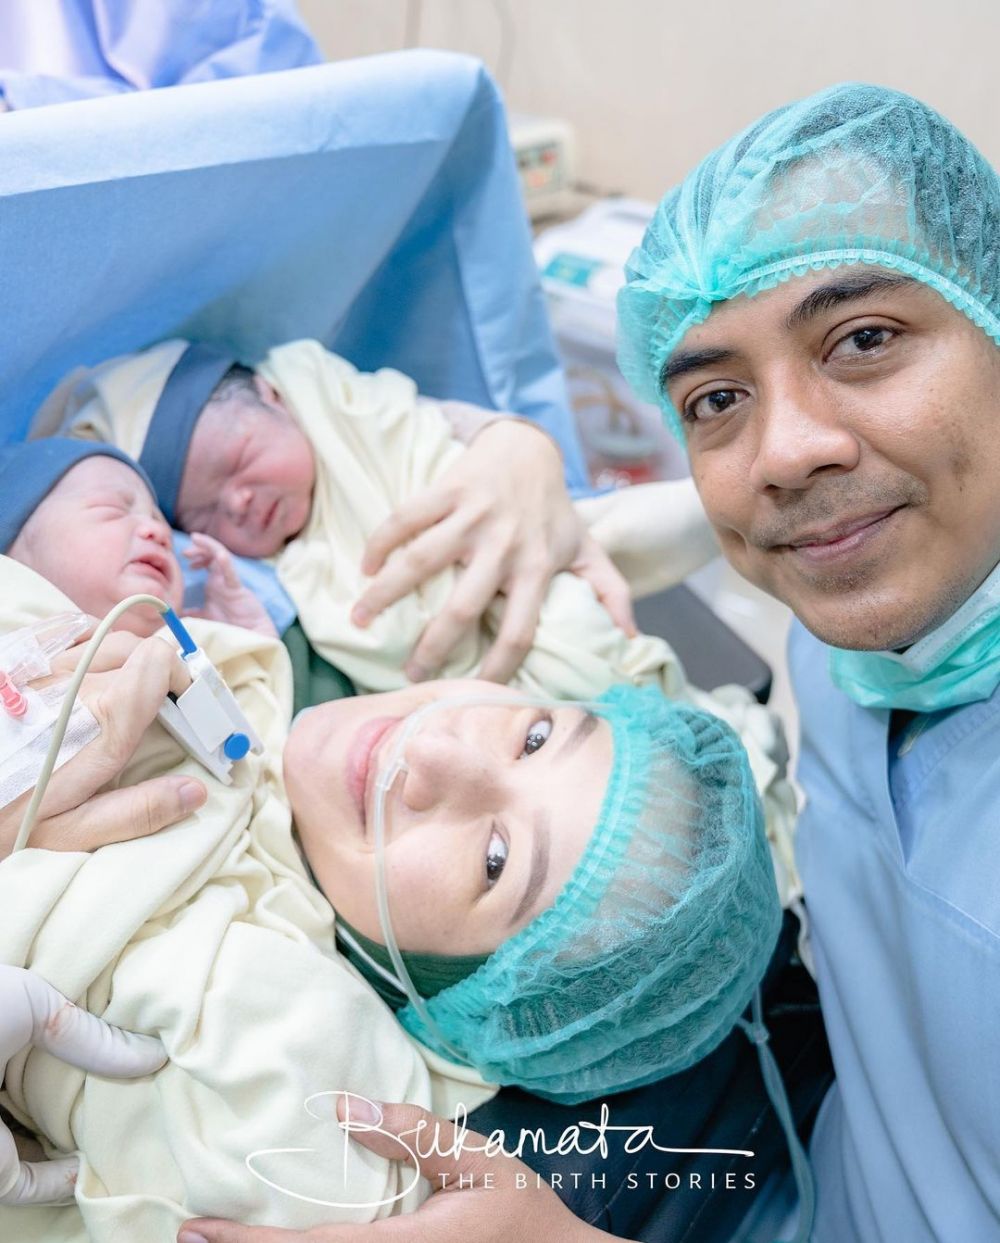 8 Tahun menanti anak laki-laki, ini 9 momen Indri Giana istri Ustaz Riza Muhammad lahirkan bayi kembar